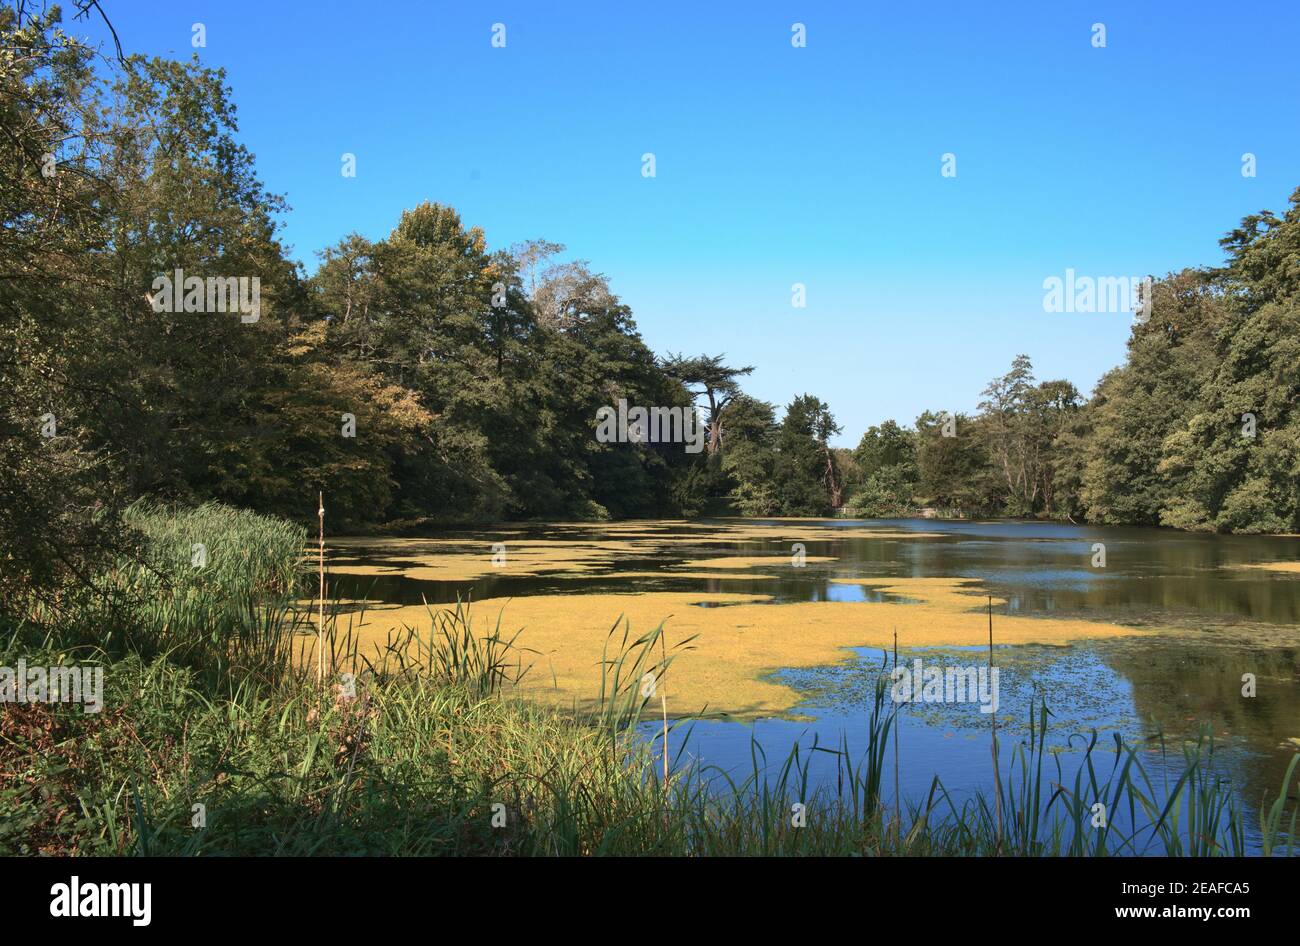 Paysage : petit lac anglais avec algues entouré d'arbres et de graminées Banque D'Images